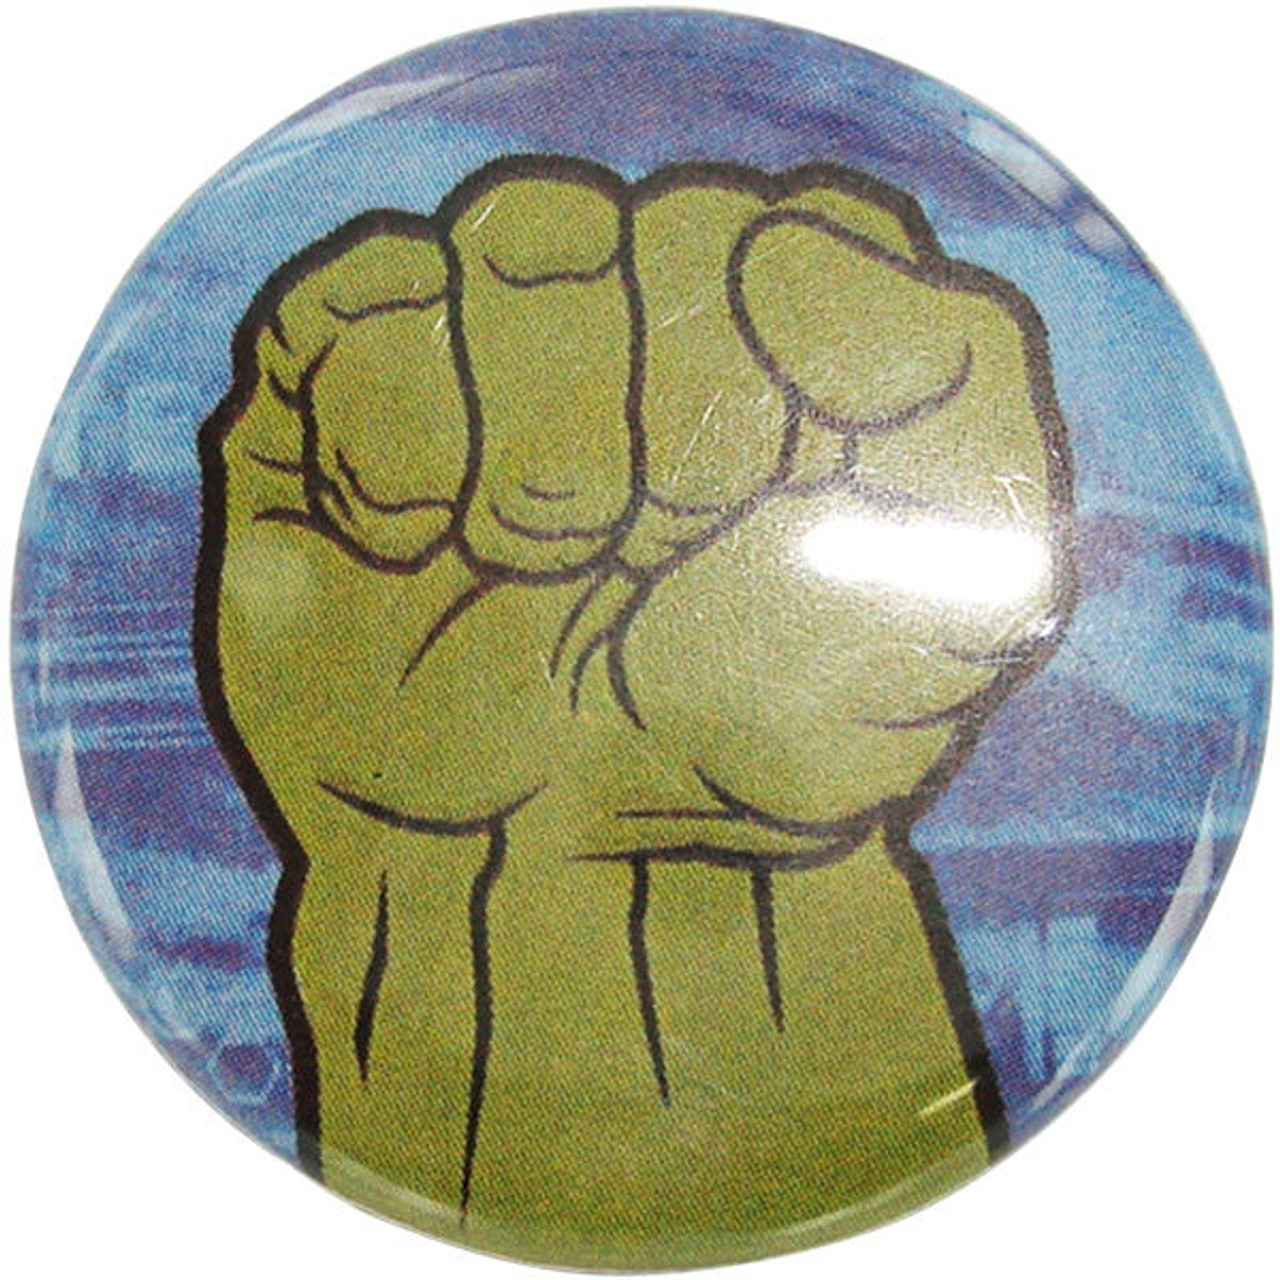 the hulk fist symbol